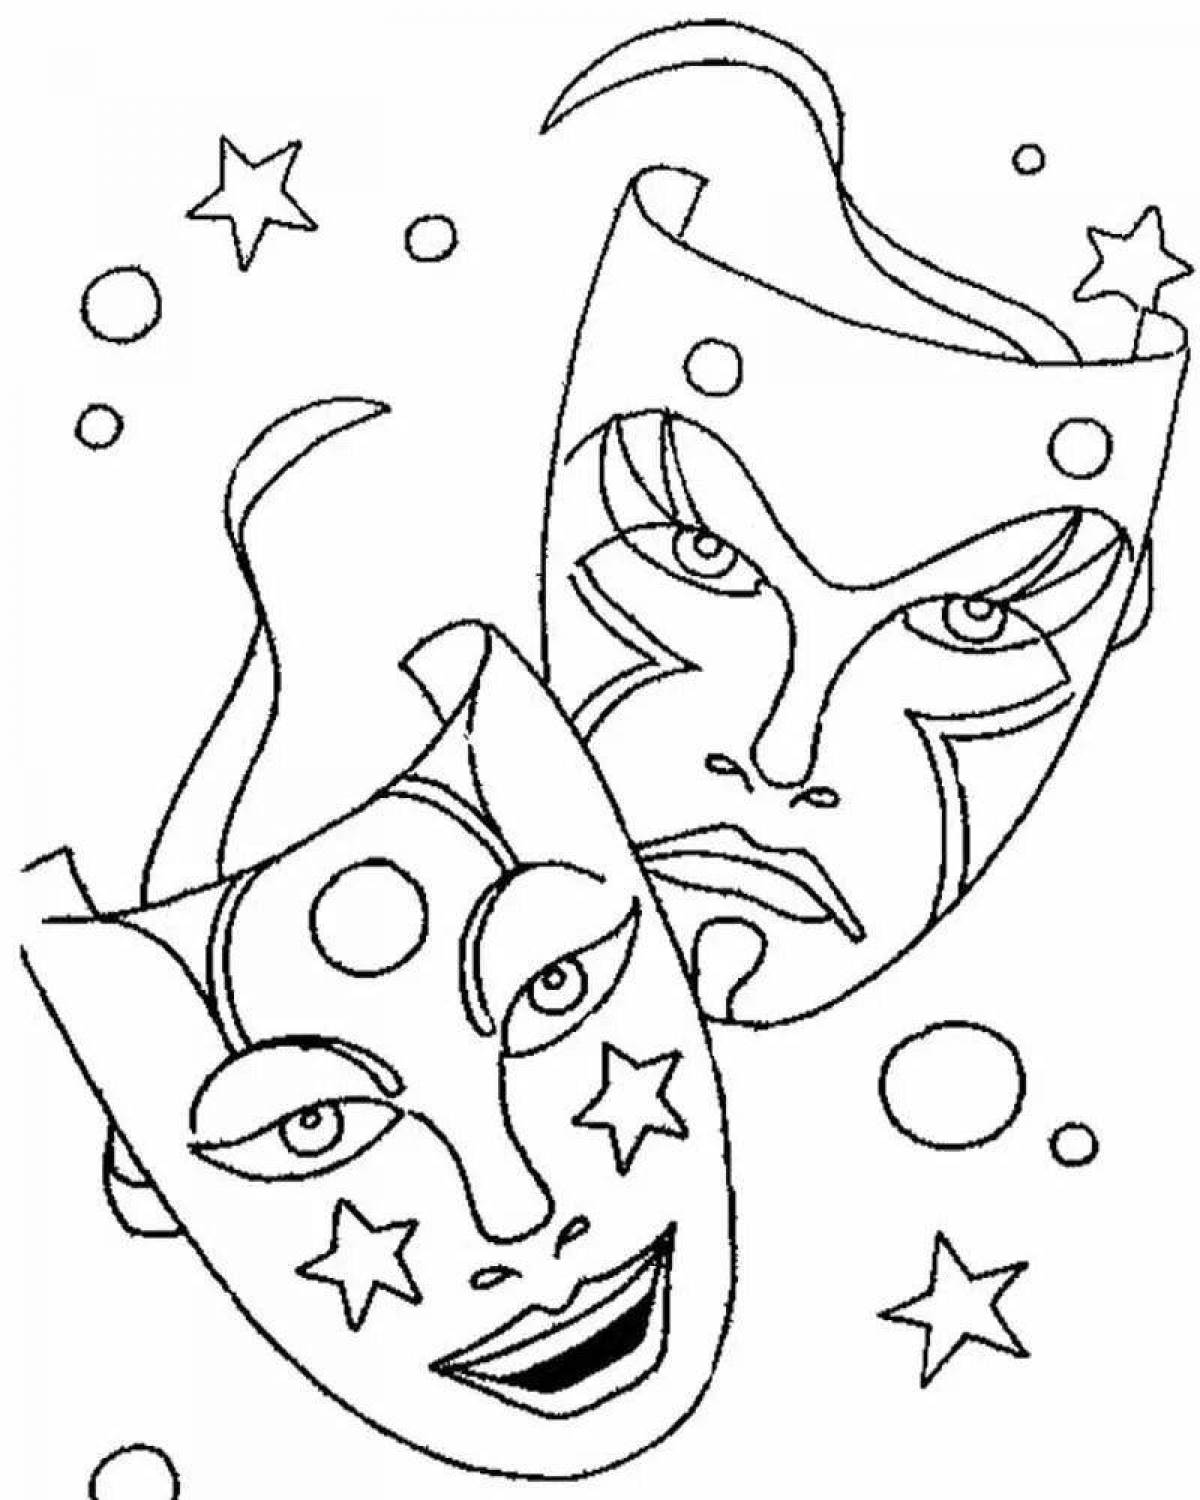 Royal masquerade coloring page